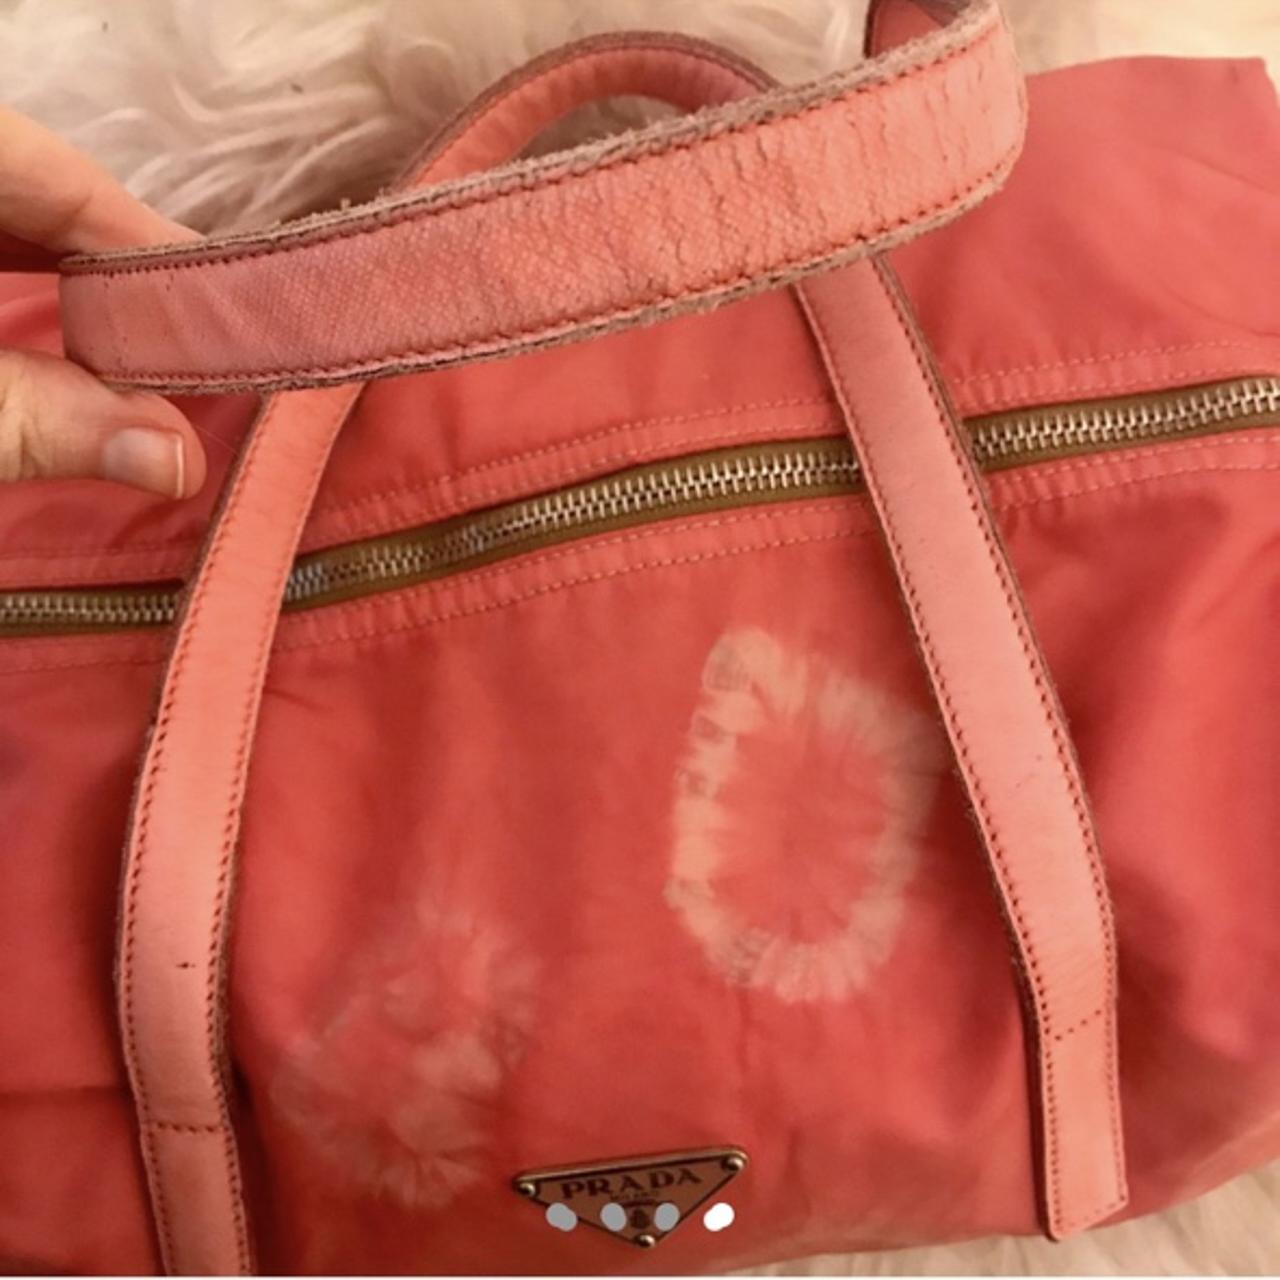 Prada, Bags, Prada Nylon Pink Vintage Mini Duffel Bag